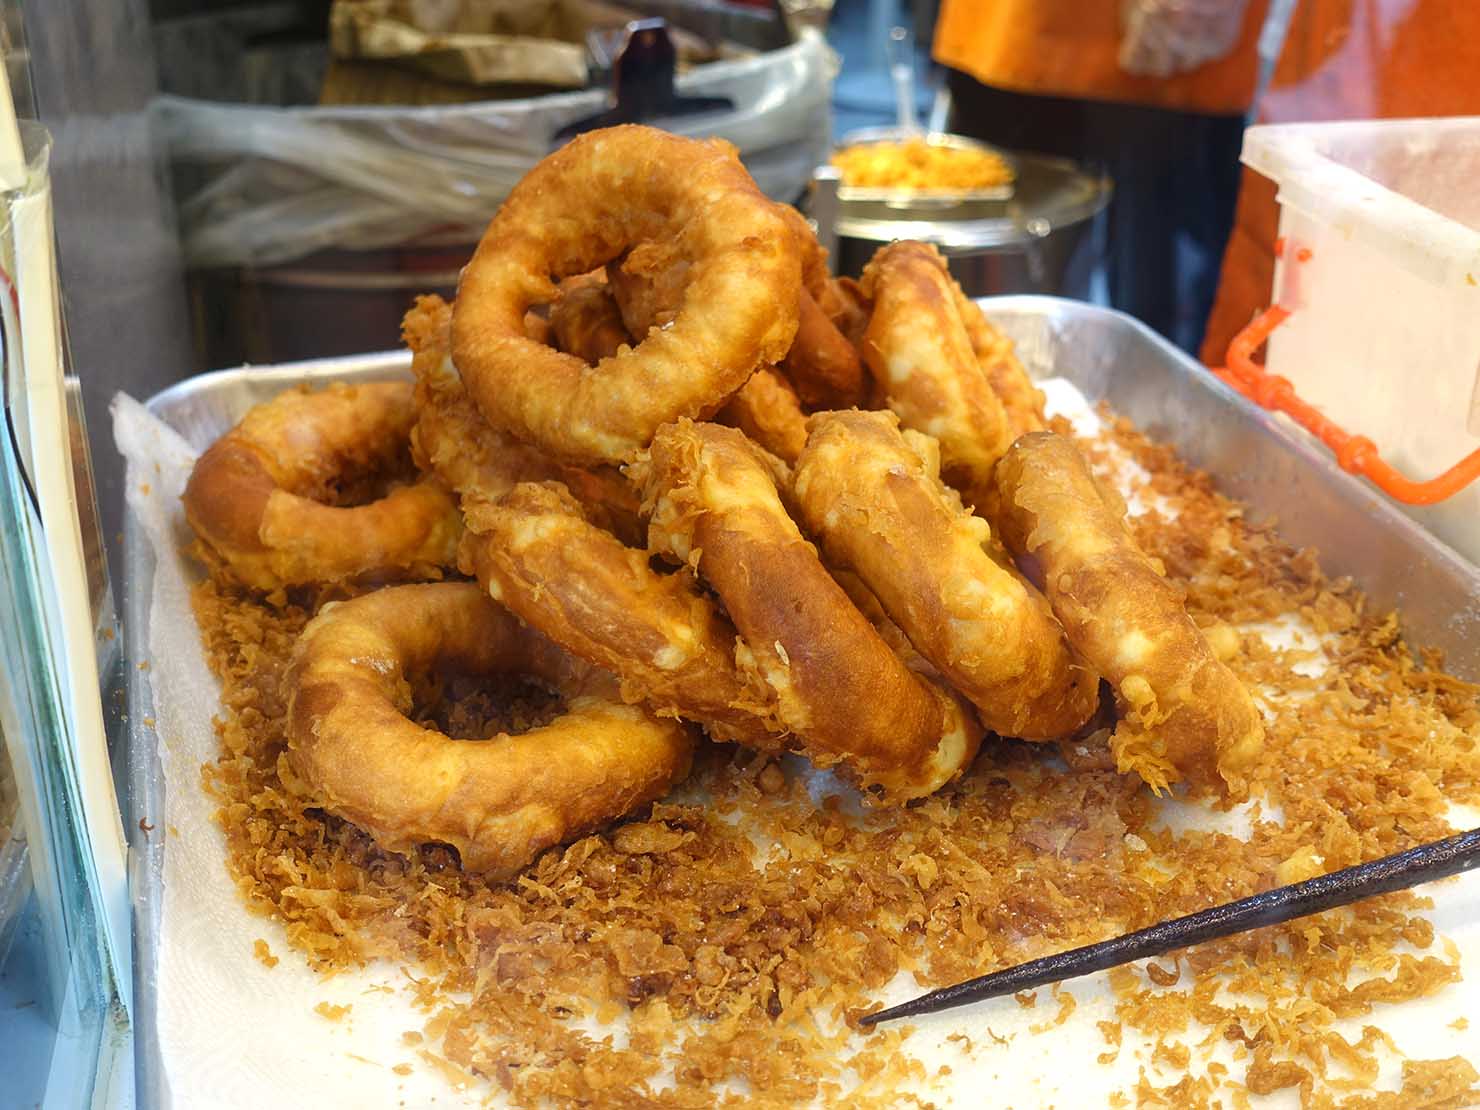 台北駅エリアのおすすめ台湾スイーツ店「脆皮鮮奶甜甜圈」の揚げたてドーナツ